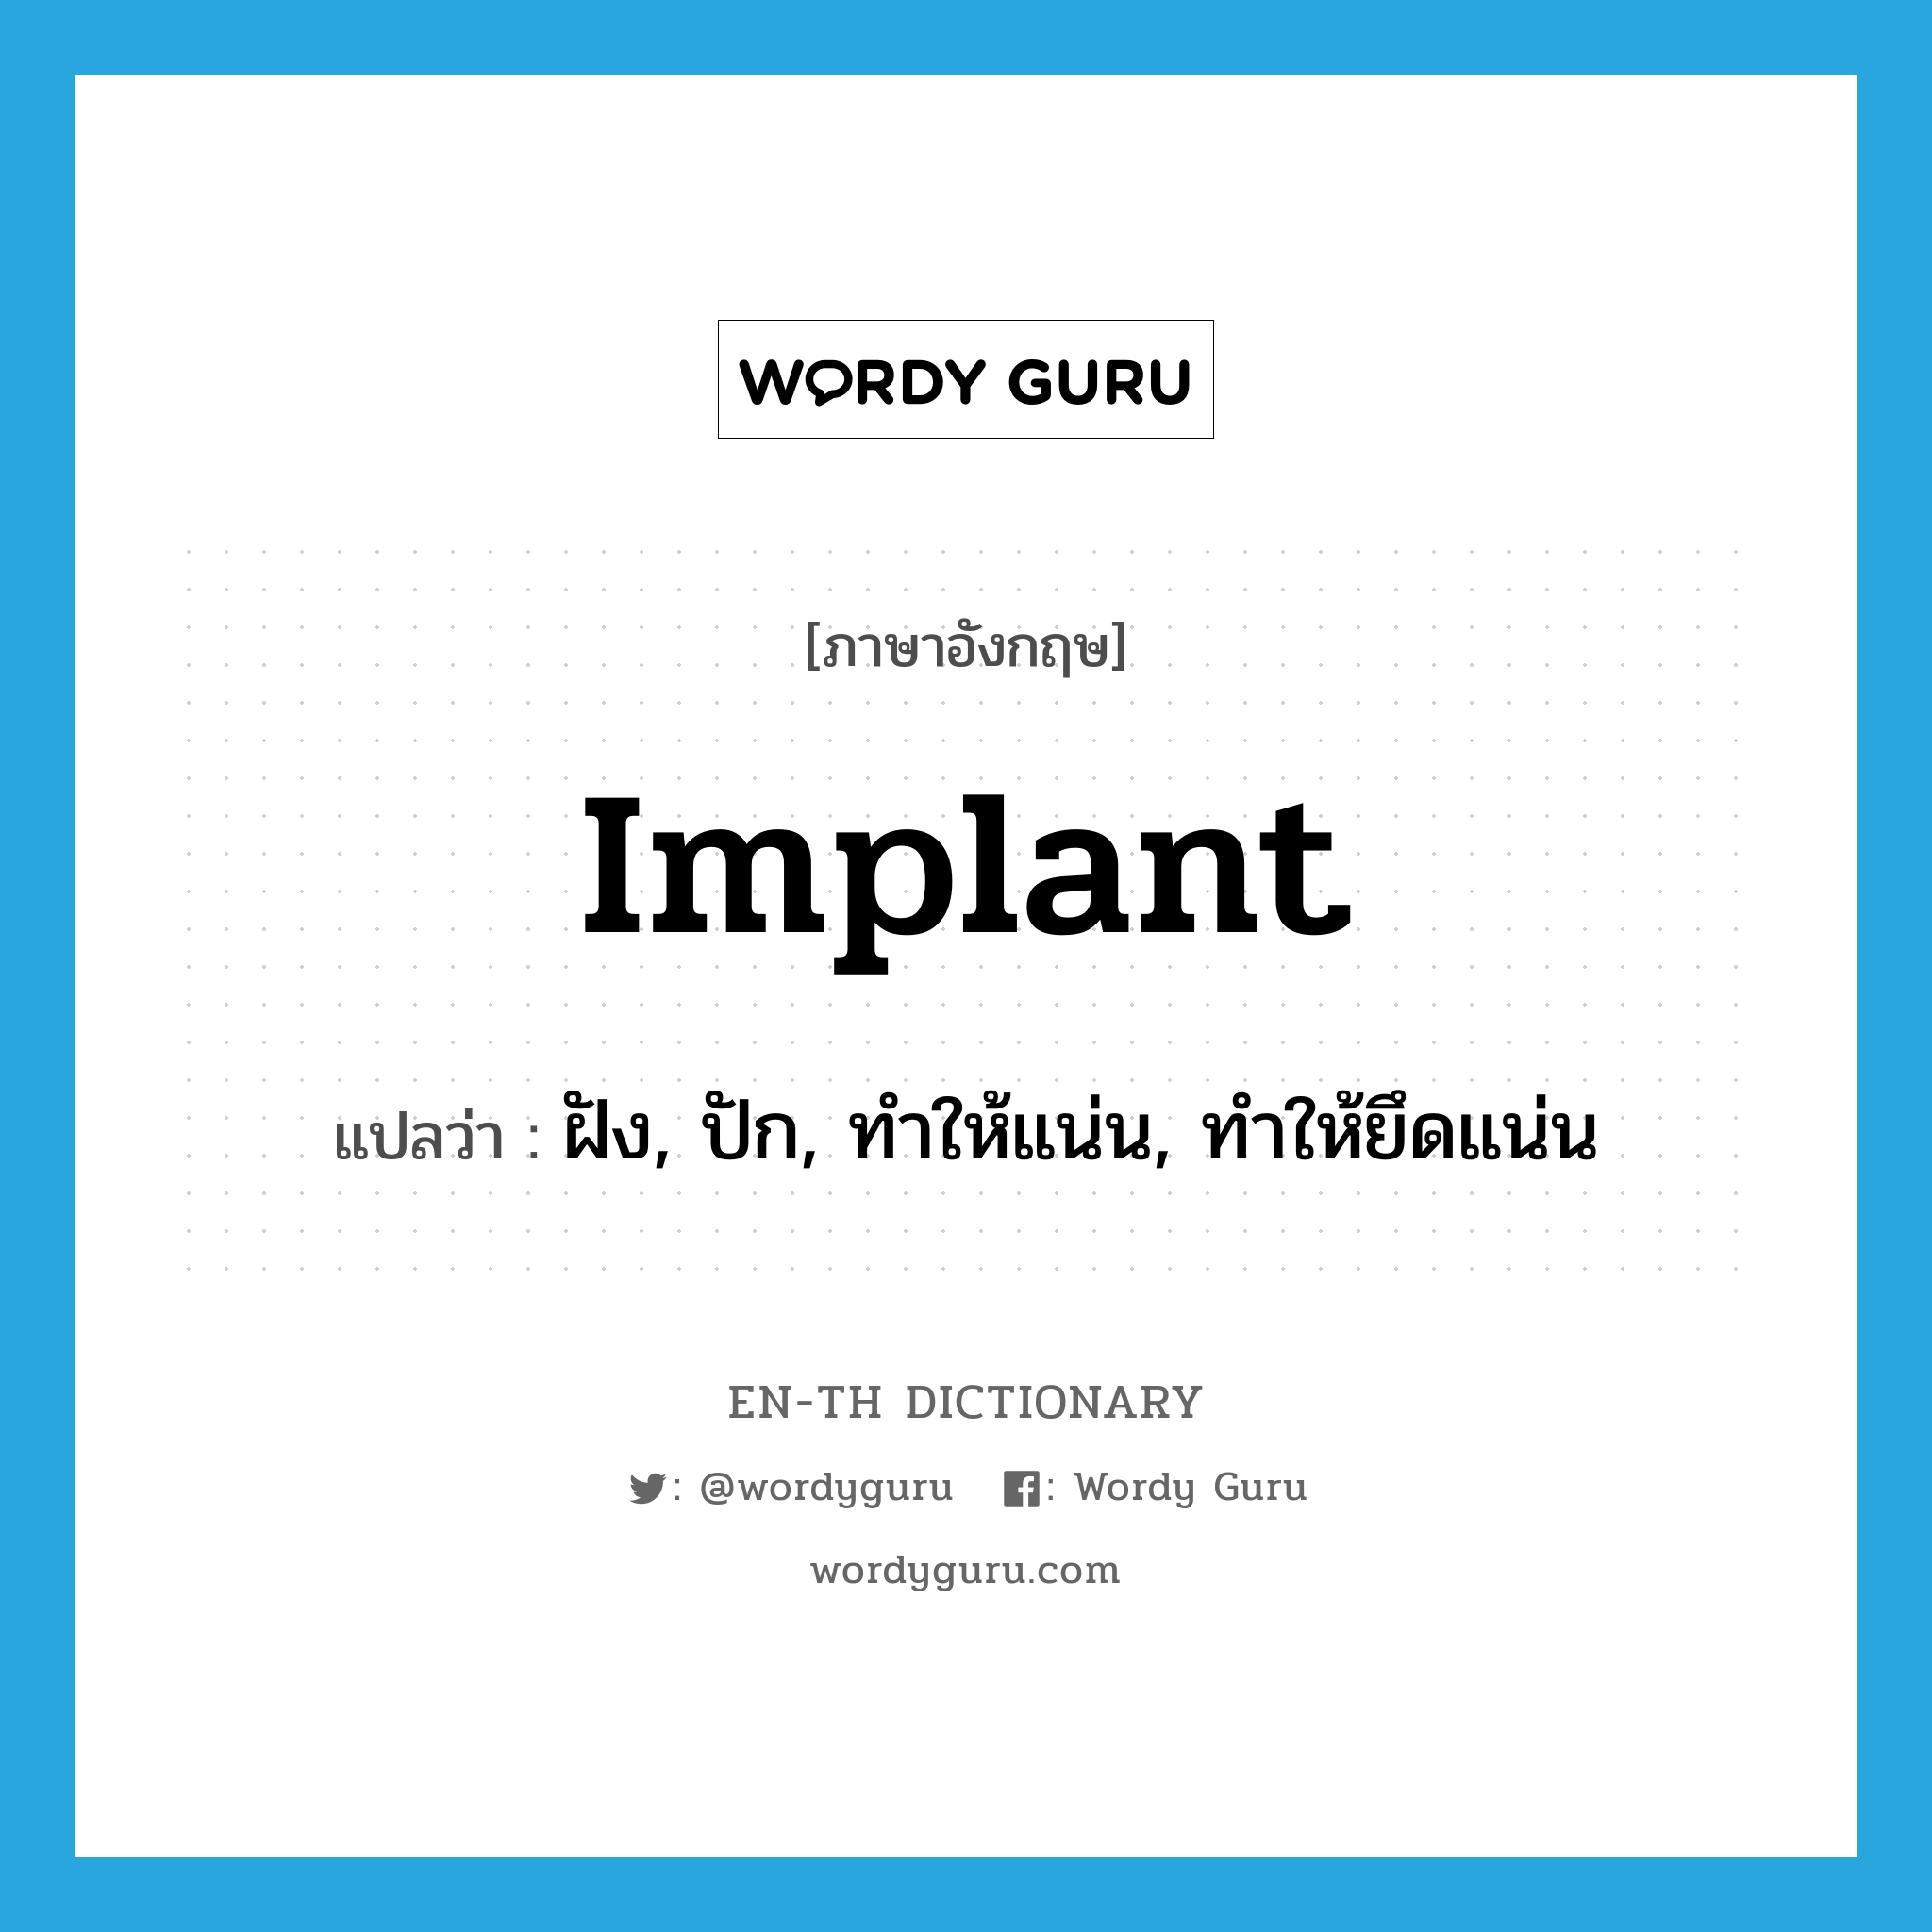 implant แปลว่า?, คำศัพท์ภาษาอังกฤษ implant แปลว่า ฝัง, ปัก, ทำให้แน่น, ทำให้ยึดแน่น ประเภท VT หมวด VT